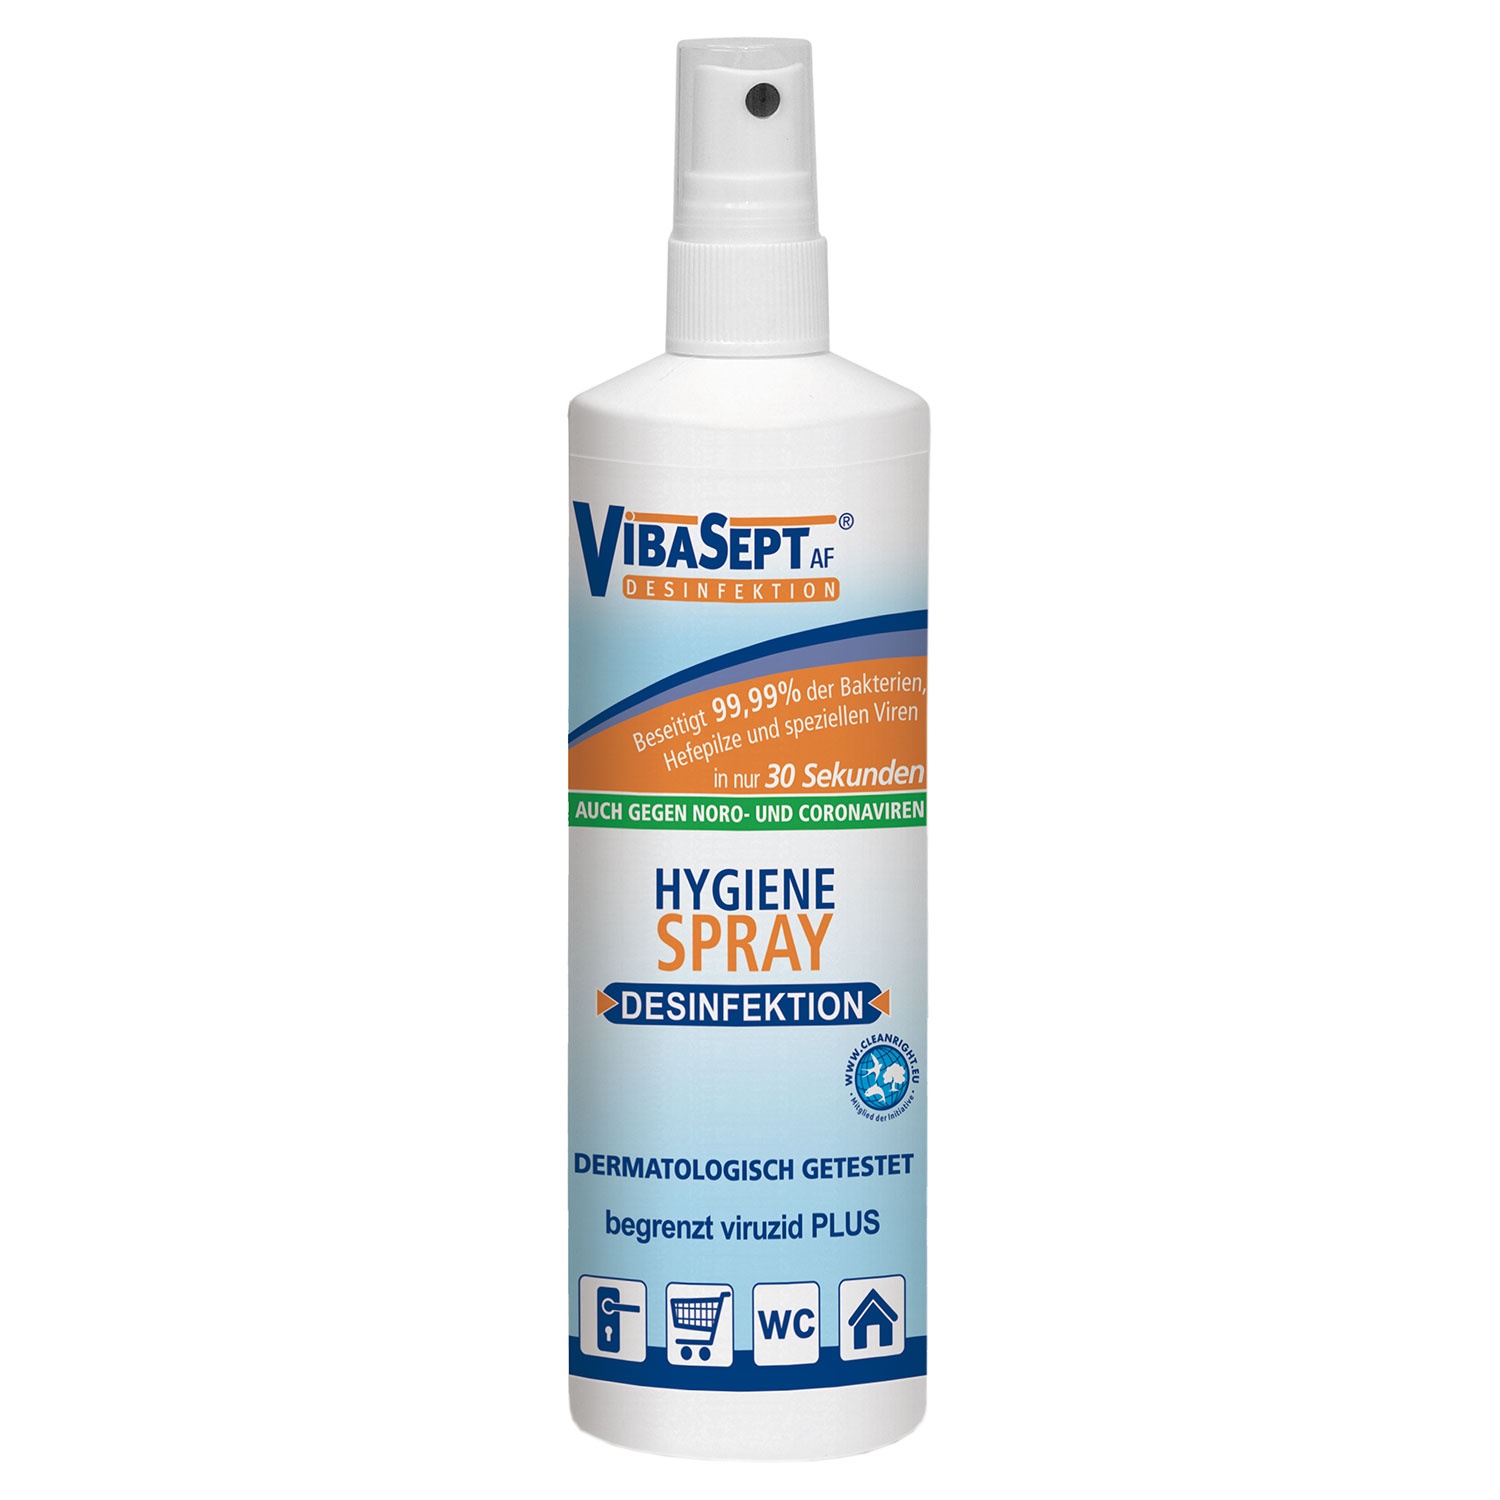 VIBASEPT AF® Hygiene-Spray 250 ml